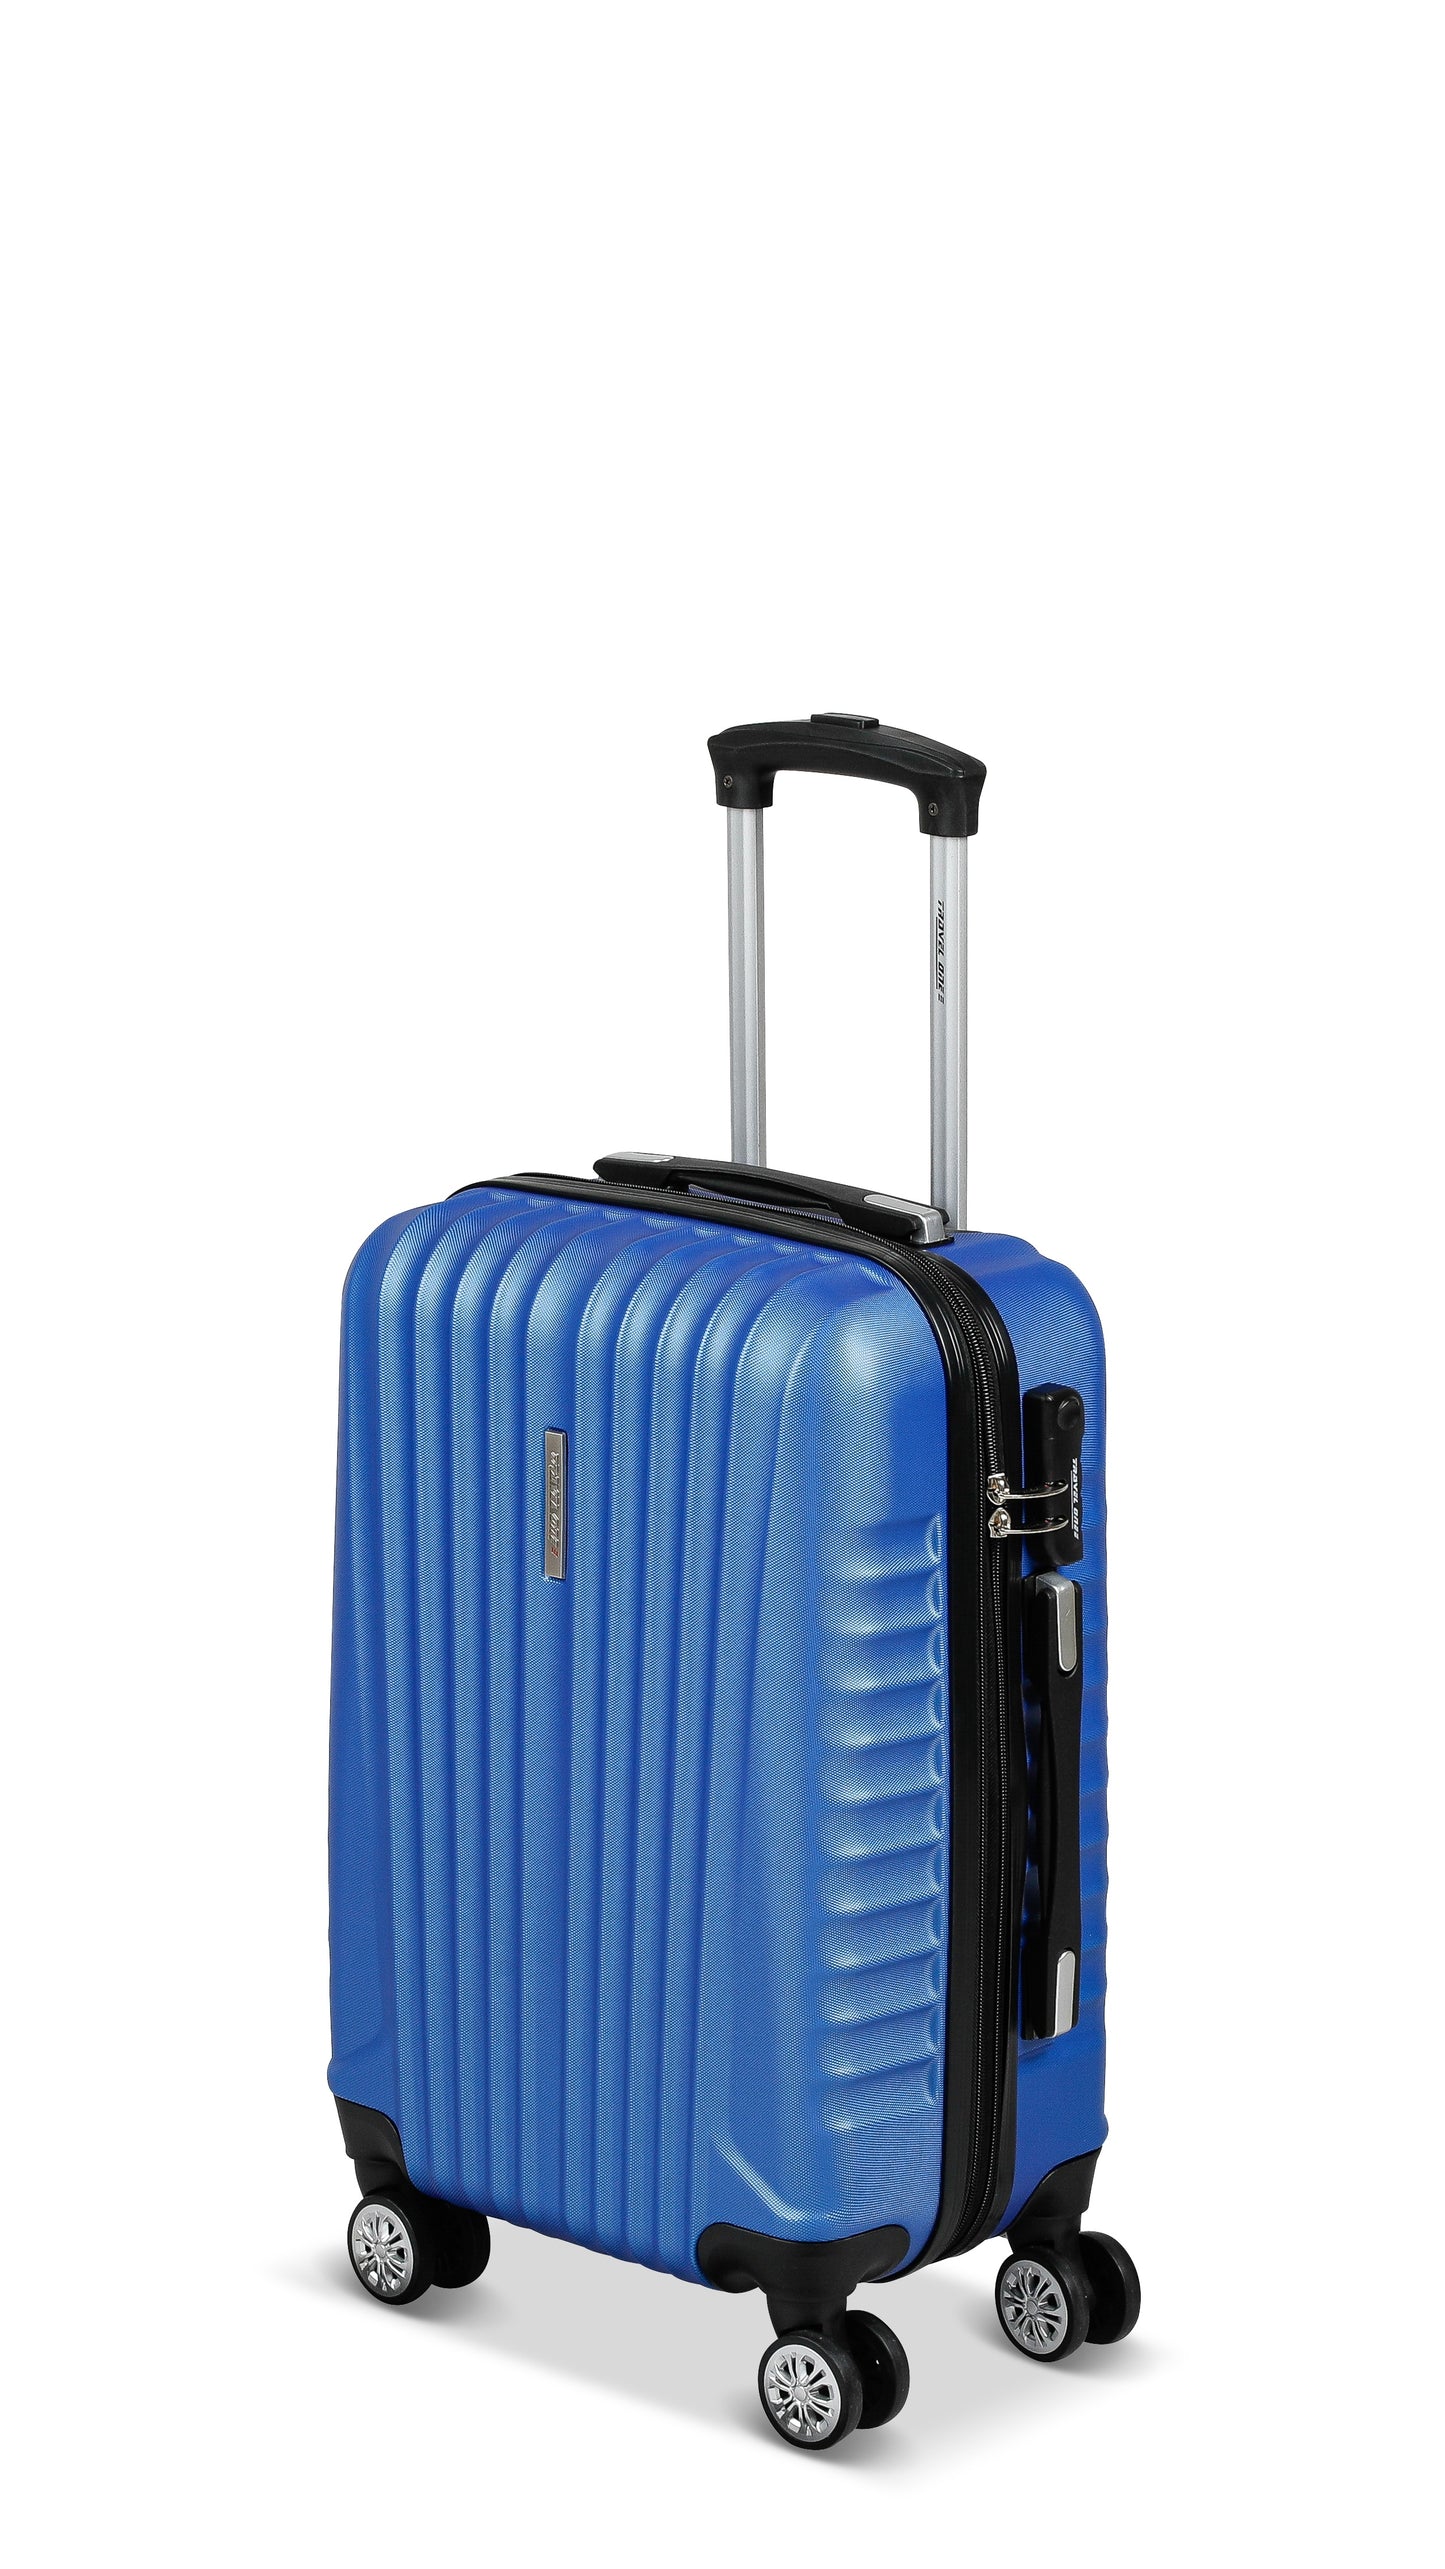 Valise Travel One Bleu Taille Cabine 55cm extensible vue de profil